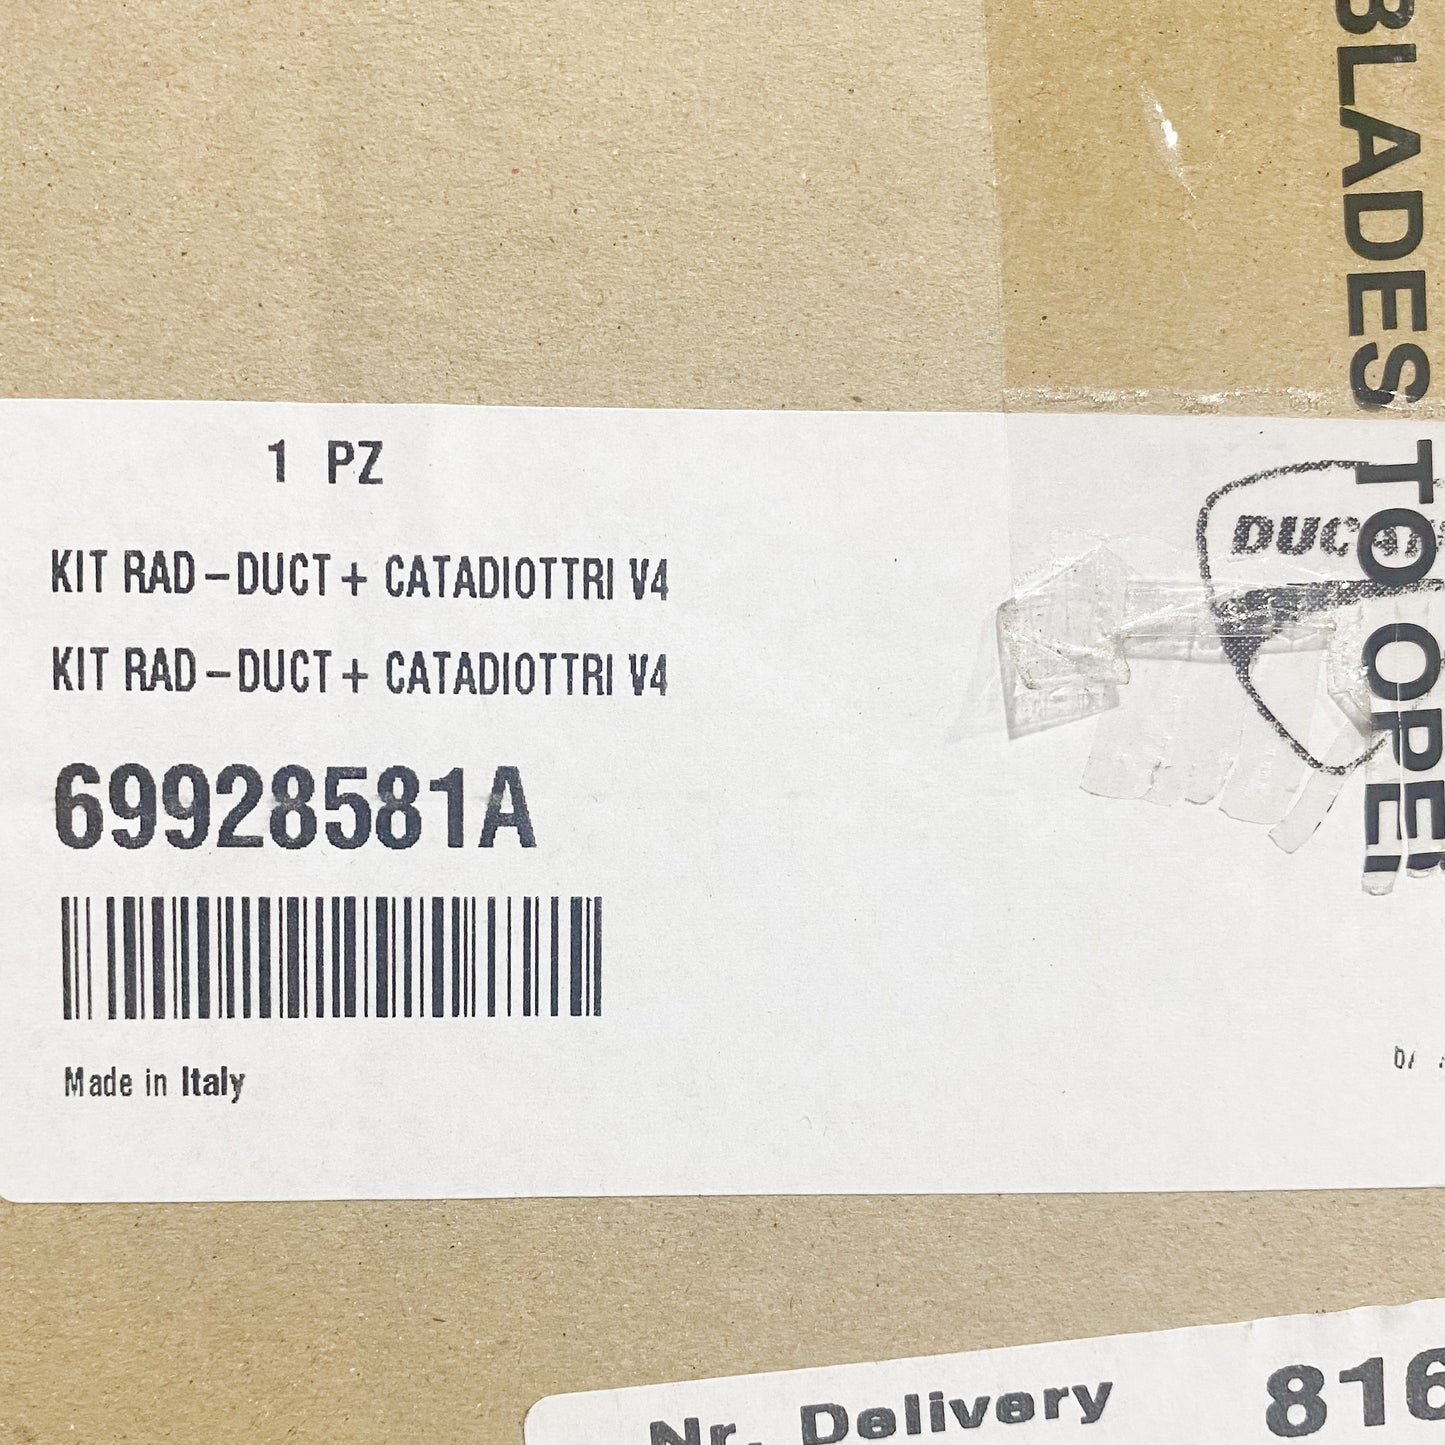 Ducati KIT RAD - DUCT + CATADIOTTRI V4 69928581A